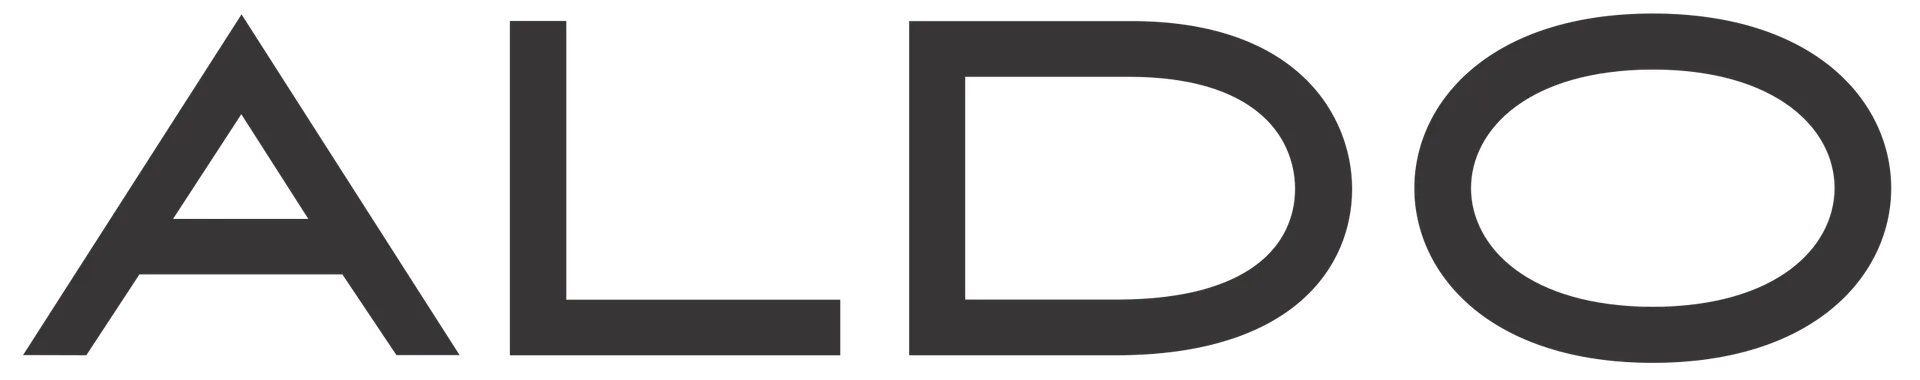 ALDO logo. Current catalogue